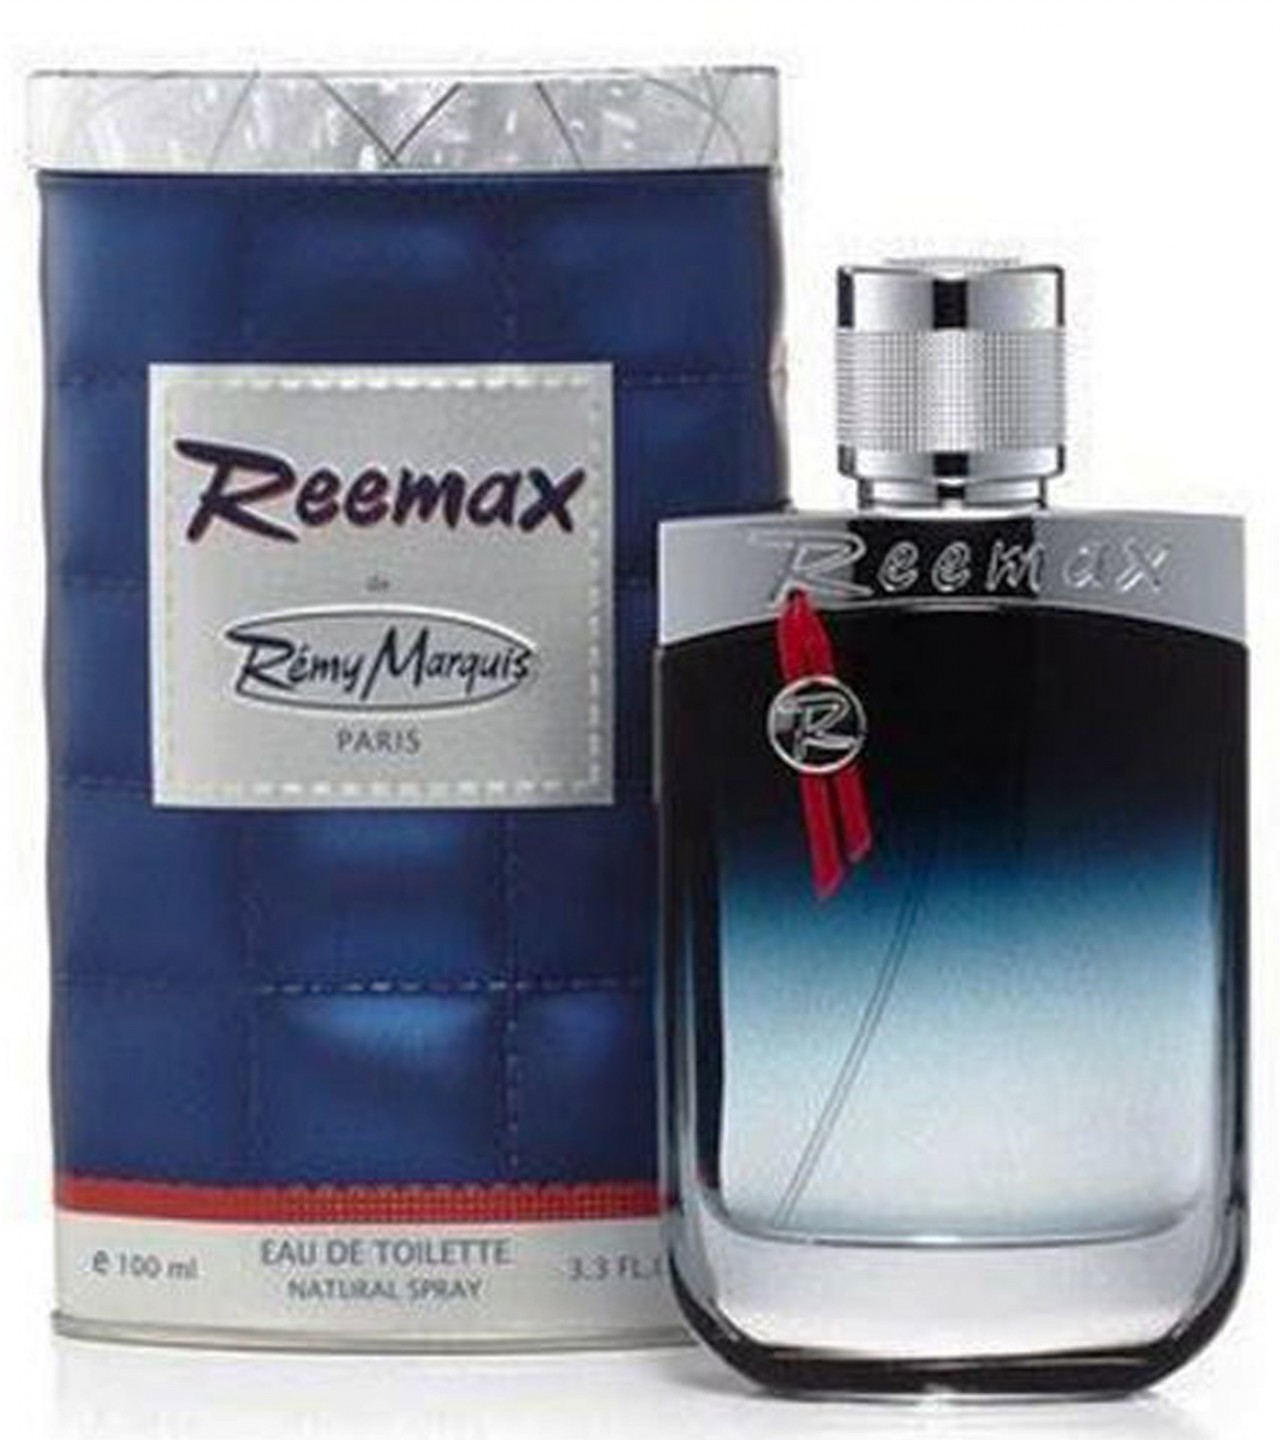 Remy Marquis Reemax Perfume For Men - Eau de Toilette - 100 ml